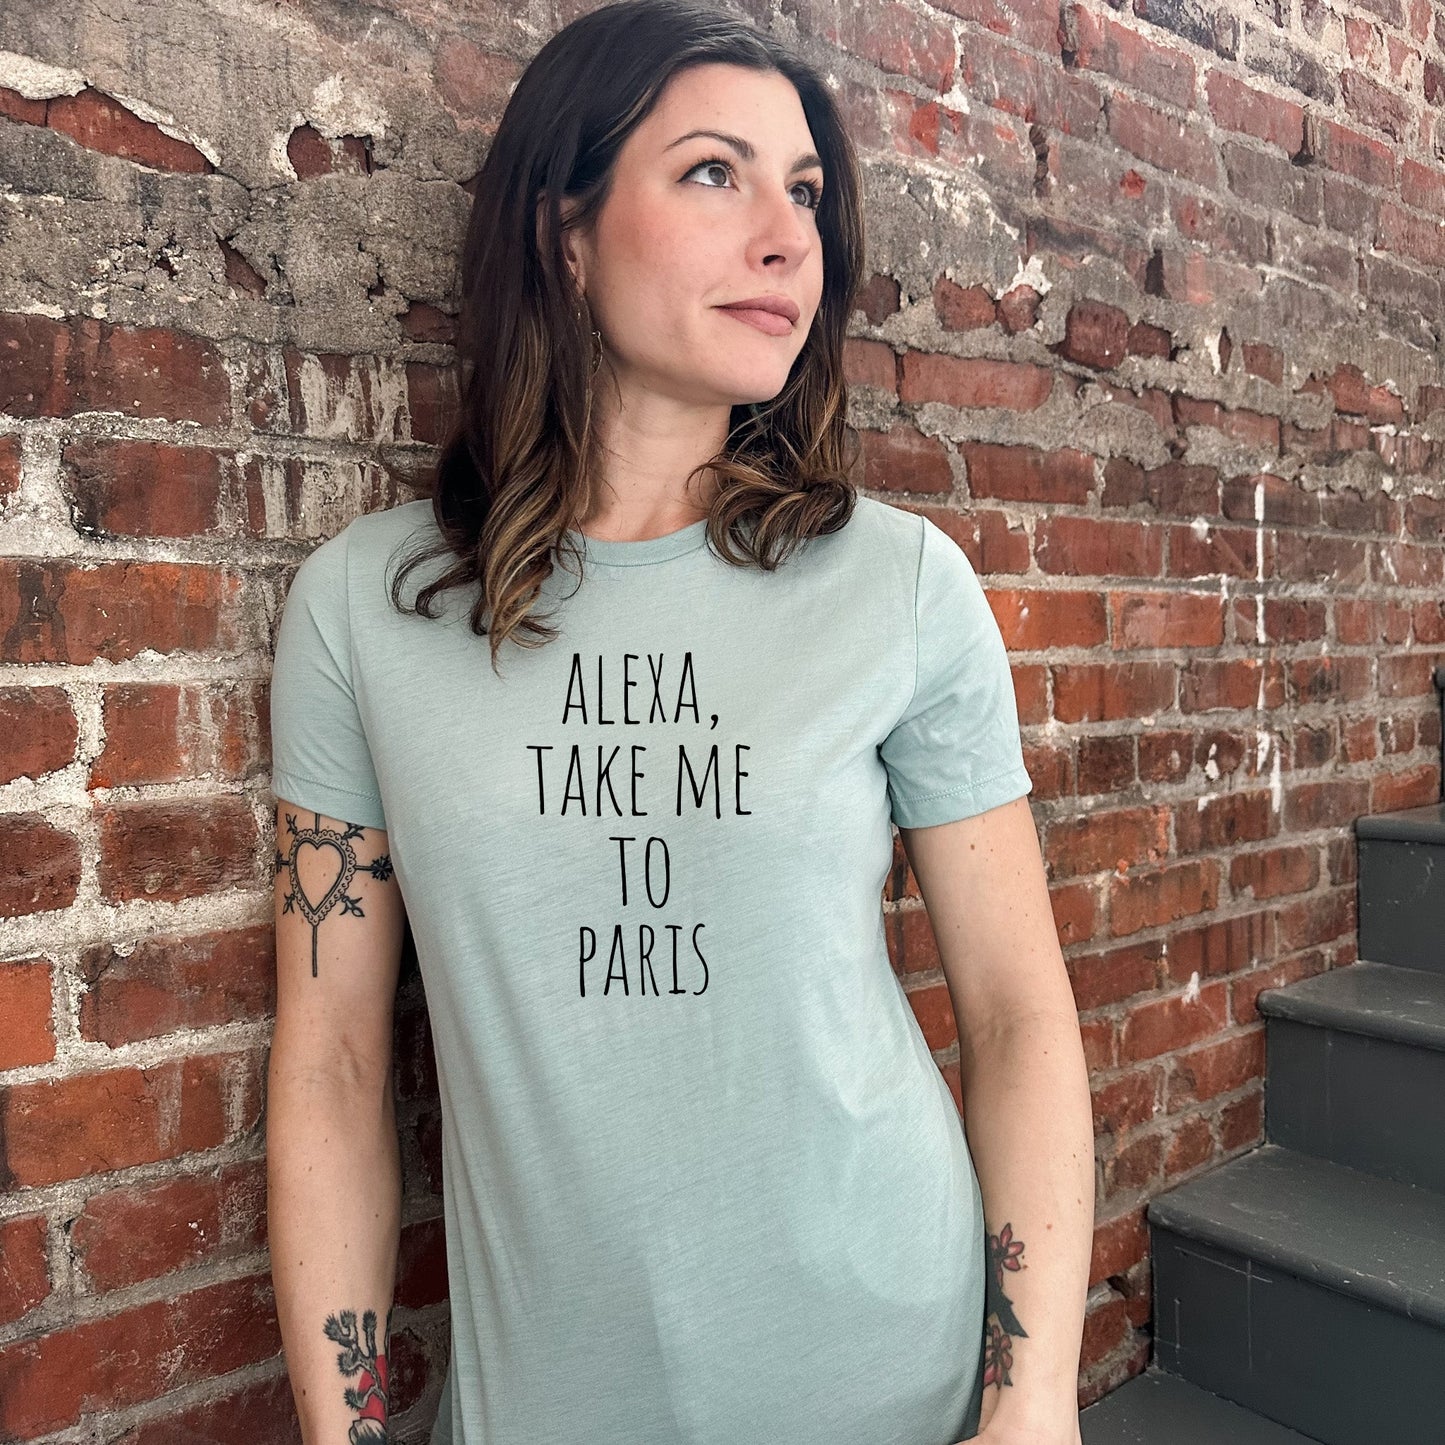 Alexa, Take Me To Paris - Women's Crew Tee - Olive or Dusty Blue